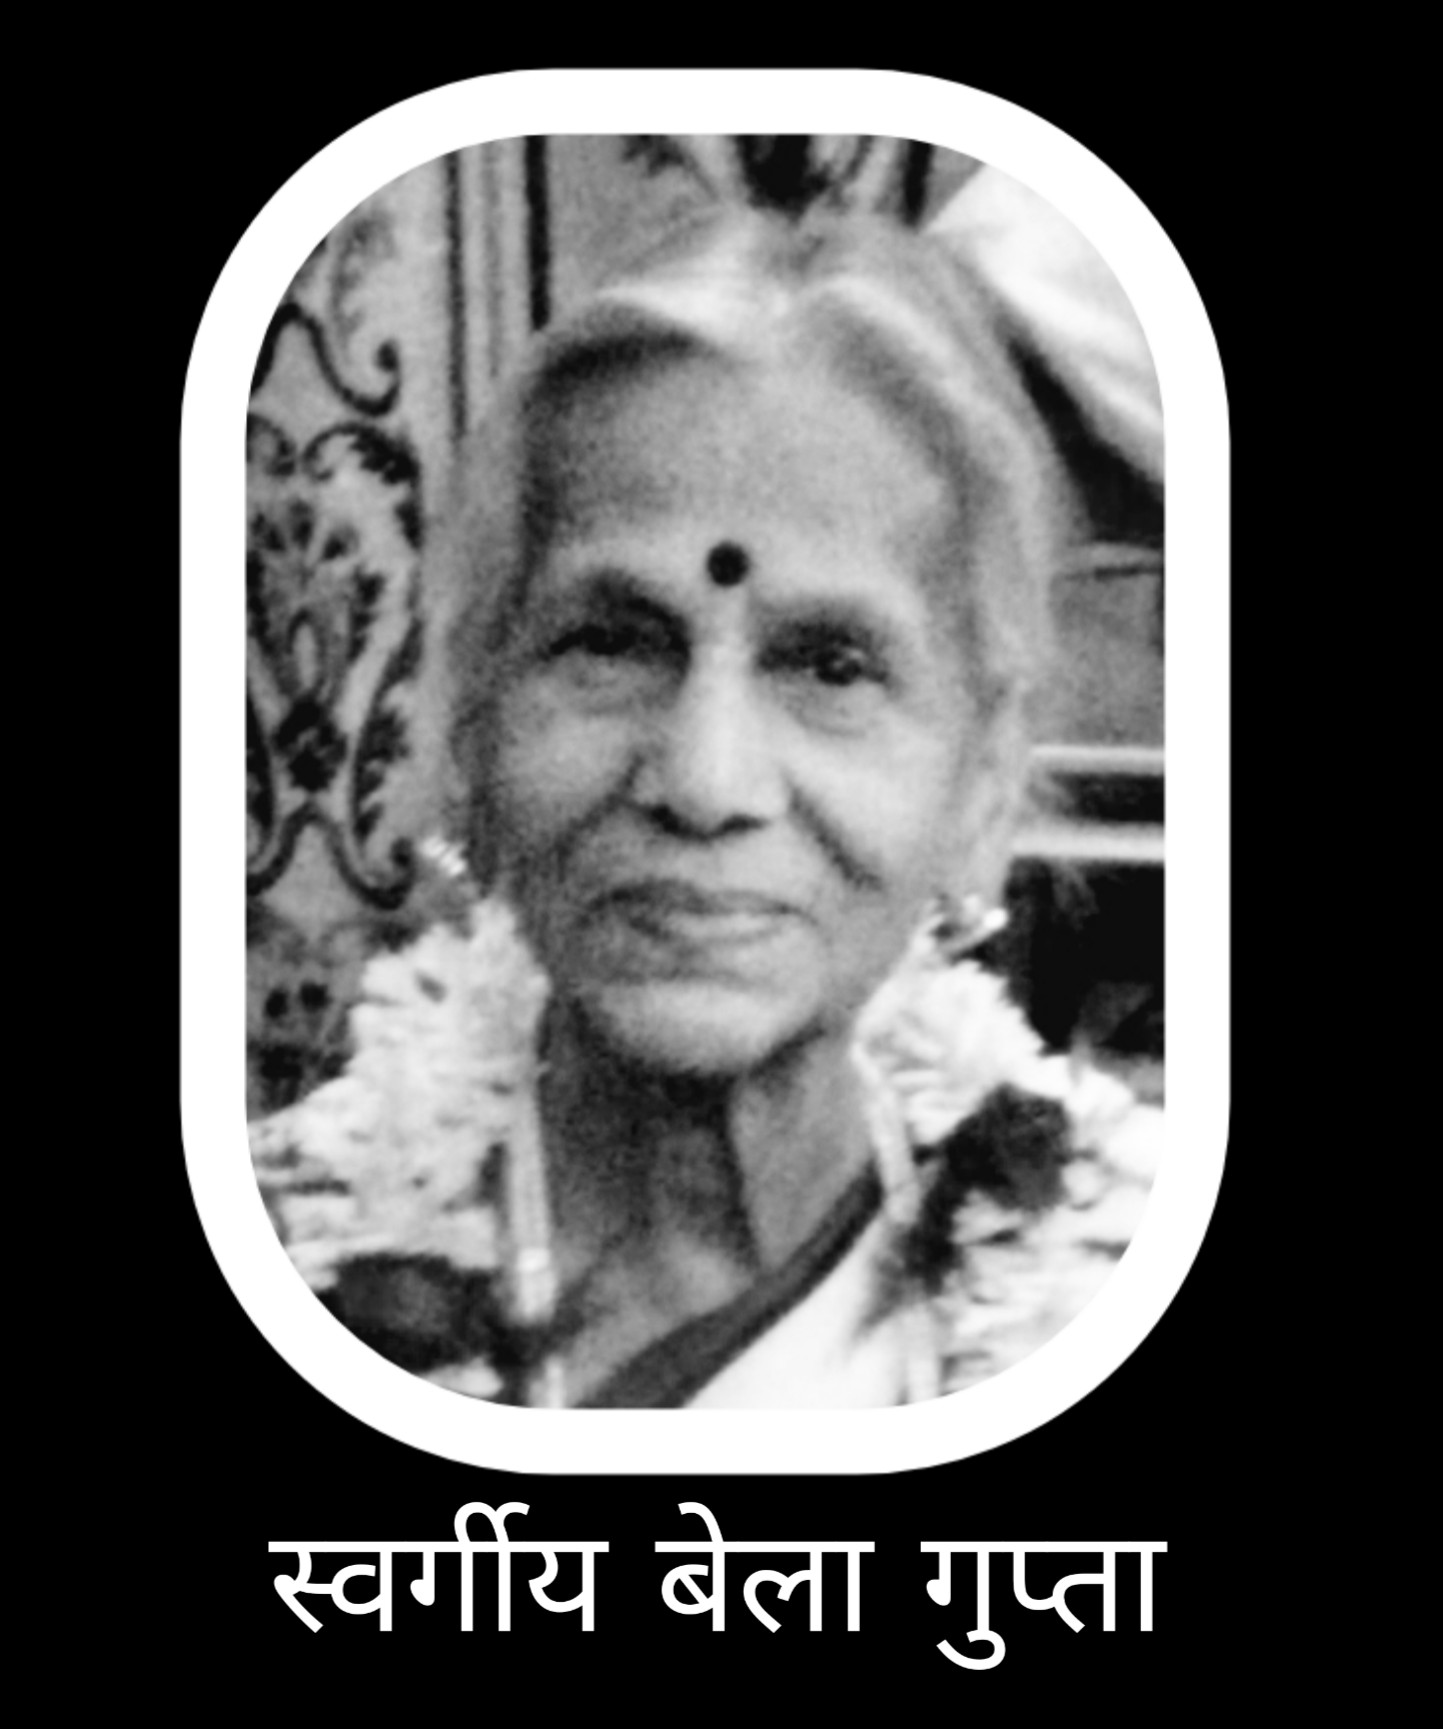 Mother of rajat gupta ( editor to rastriya khabar ) passes away